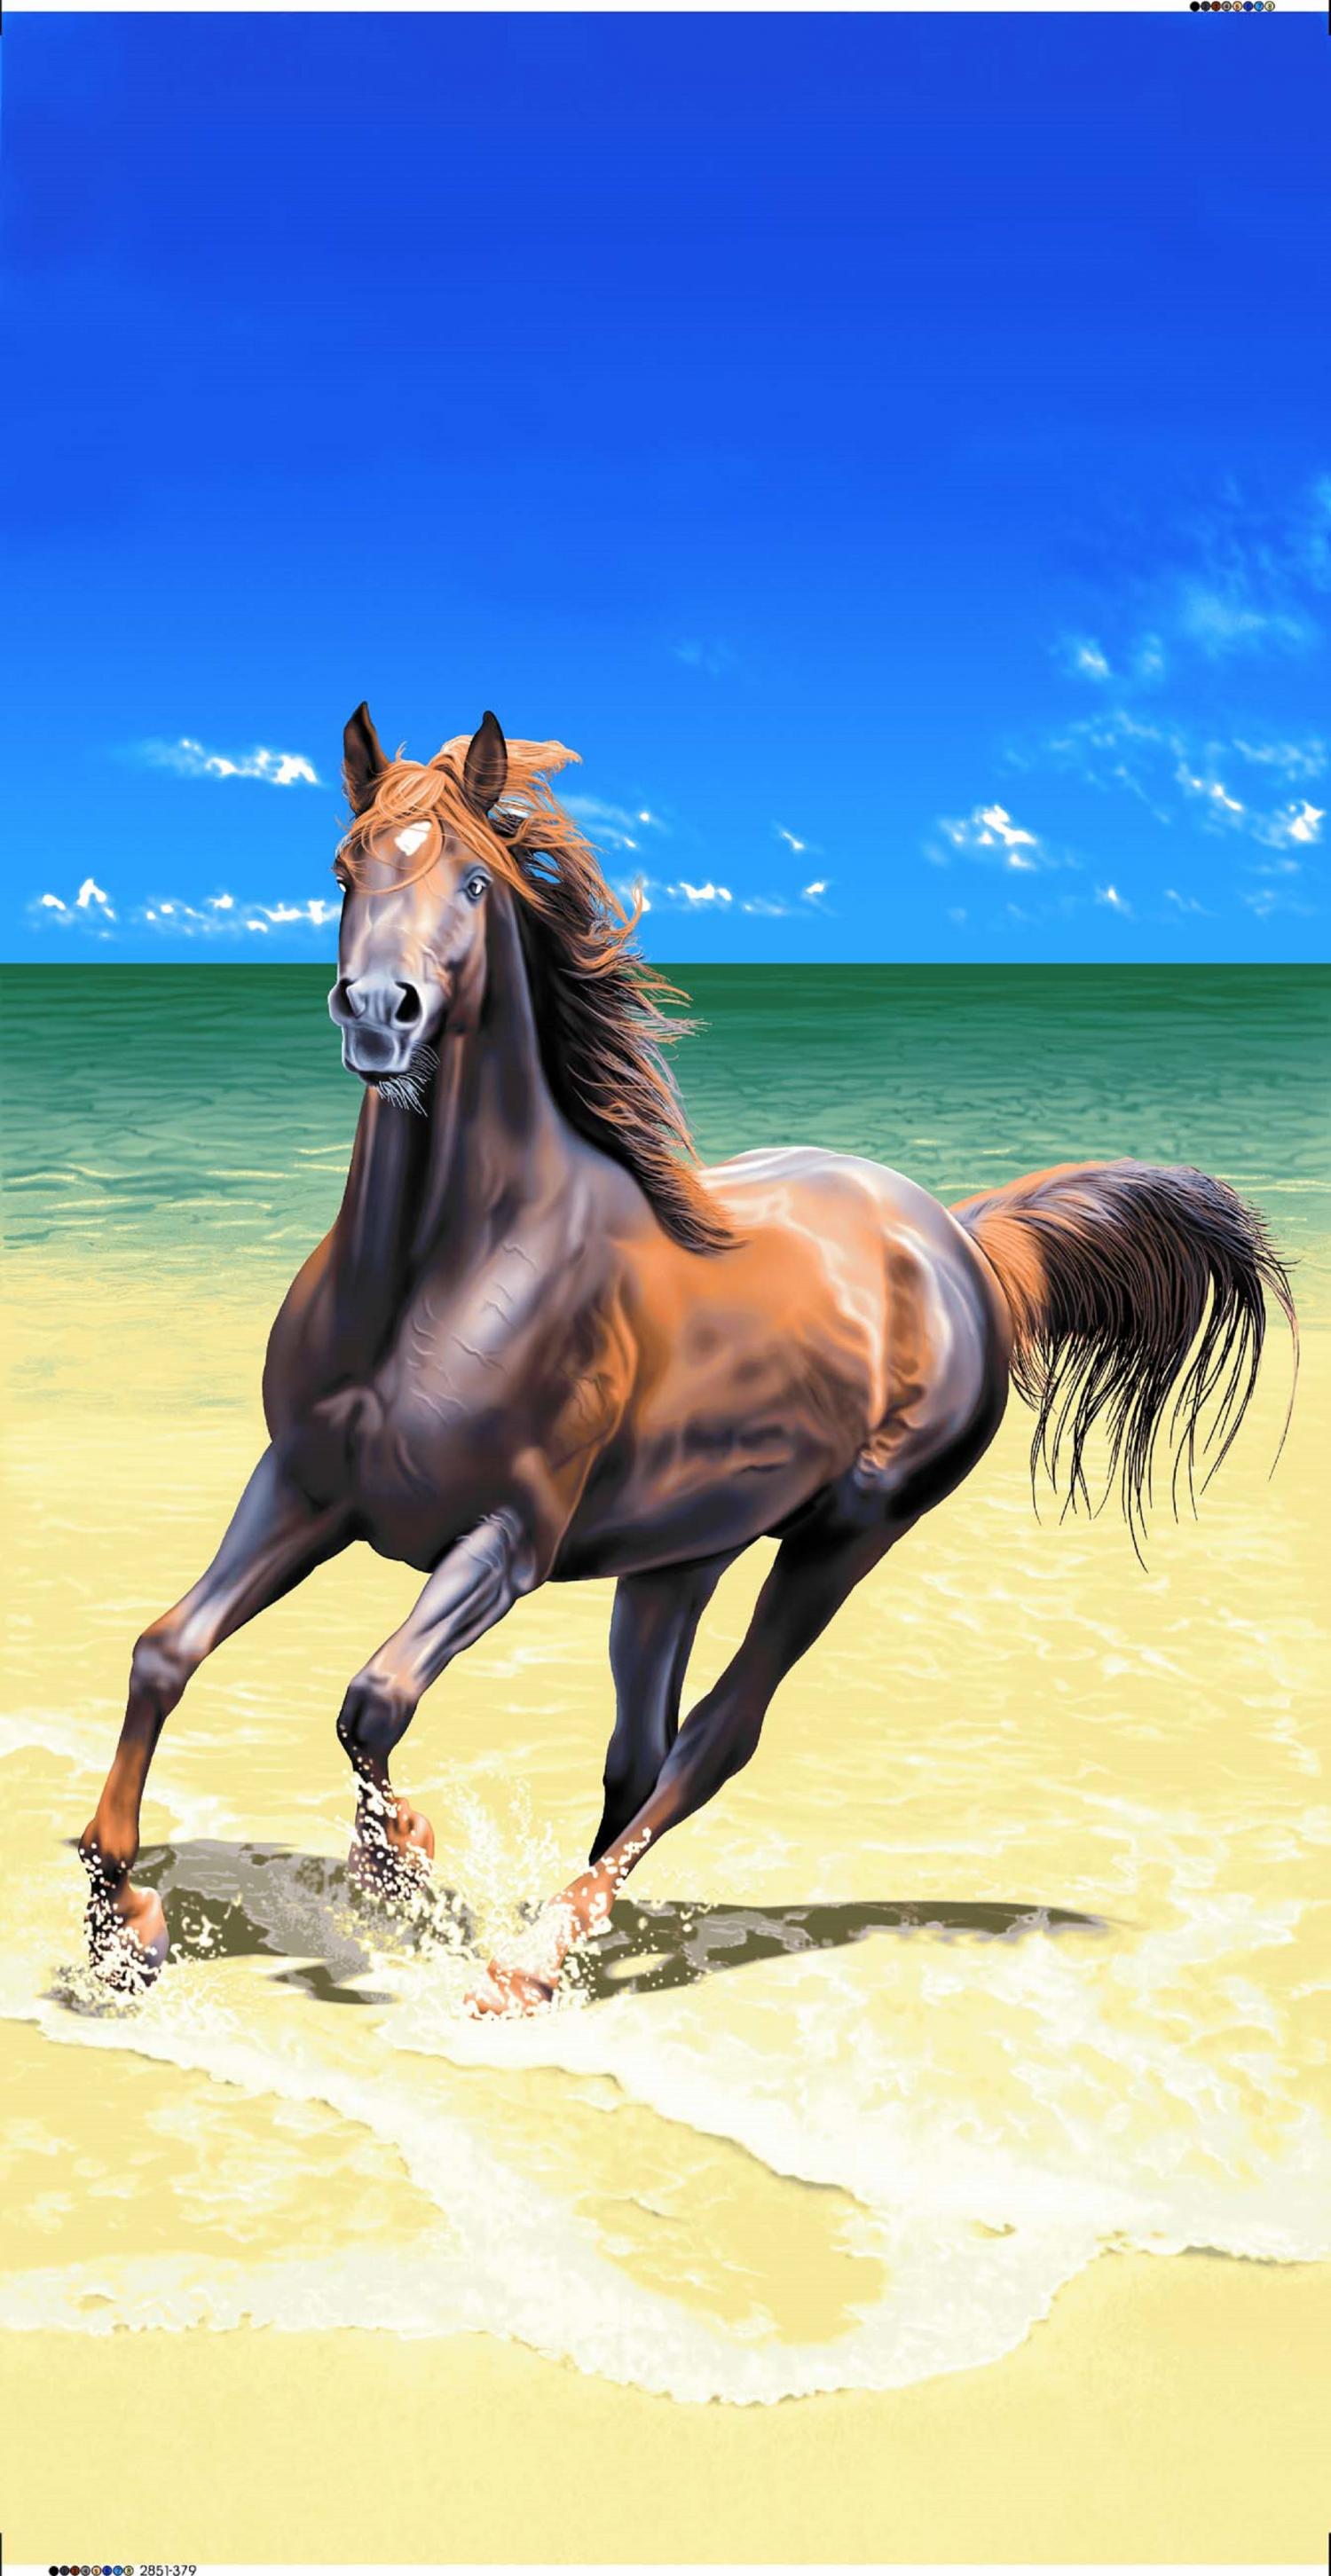 BR2851 HORSE ON BEACH